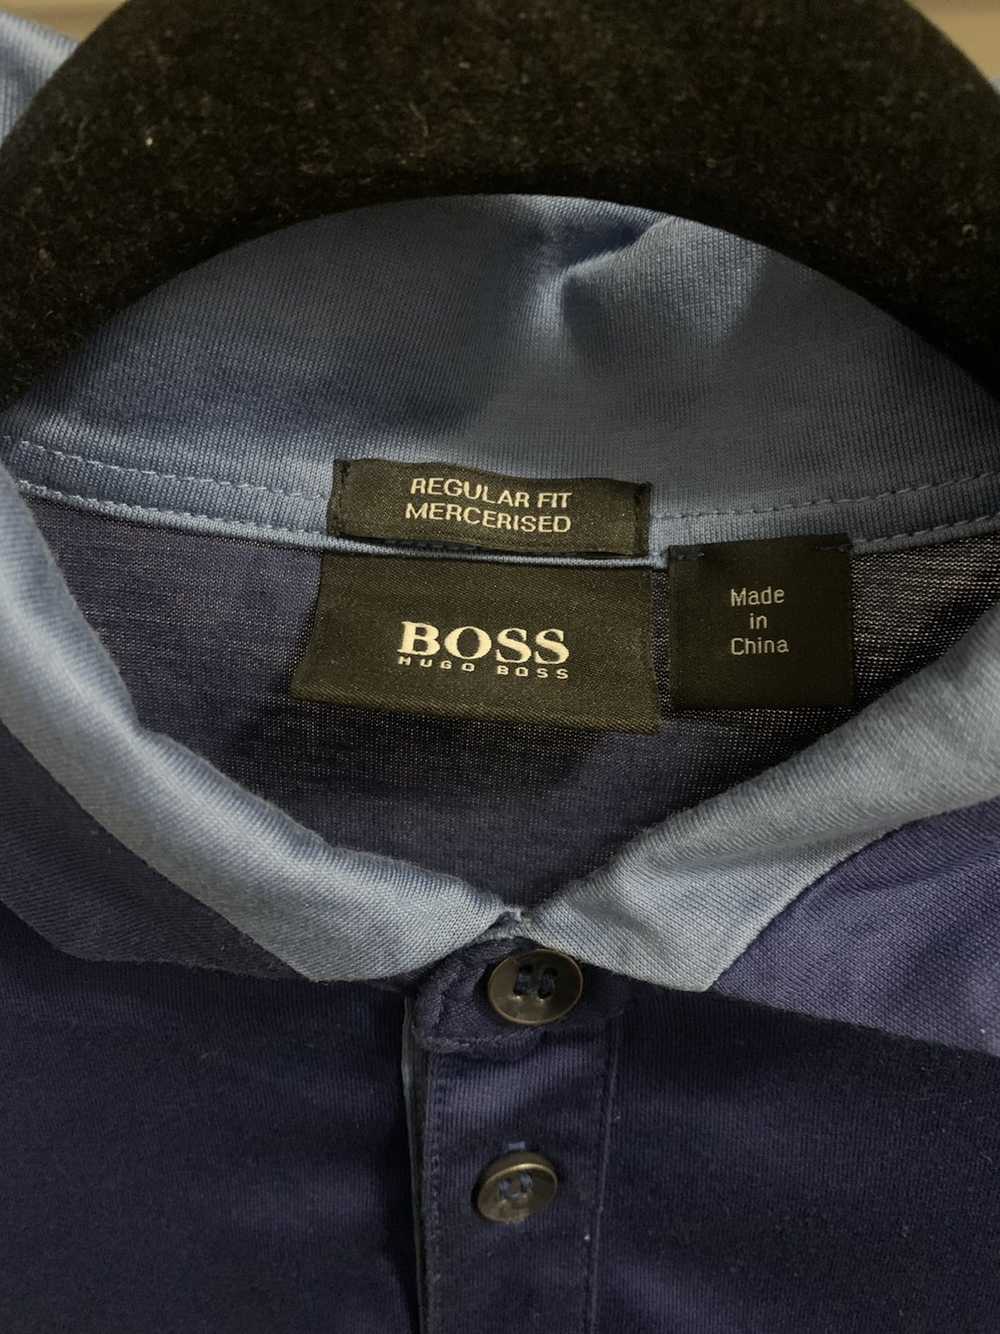 Hugo Boss Hugo boss - image 3